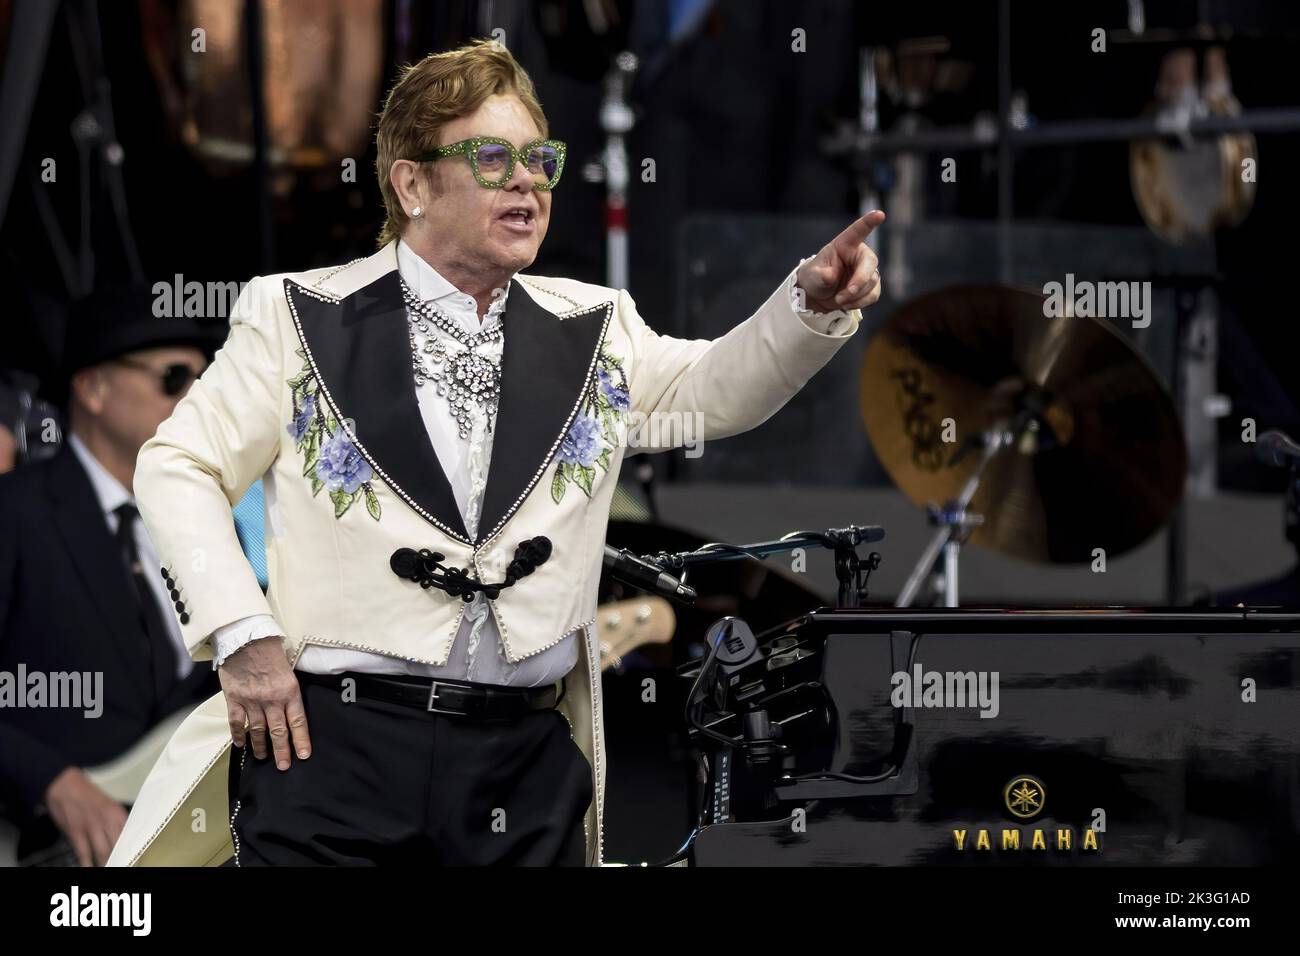 LONDRES, ANGLETERRE : Elton John se produit au British Summertime Festival lors de sa tournée Farewell Yellow Brick Road à Hyde Park. Avec: Elton John où: Londres, Royaume-Uni quand: 24 juin 2022 crédit: Neil Lupin/WENN Banque D'Images